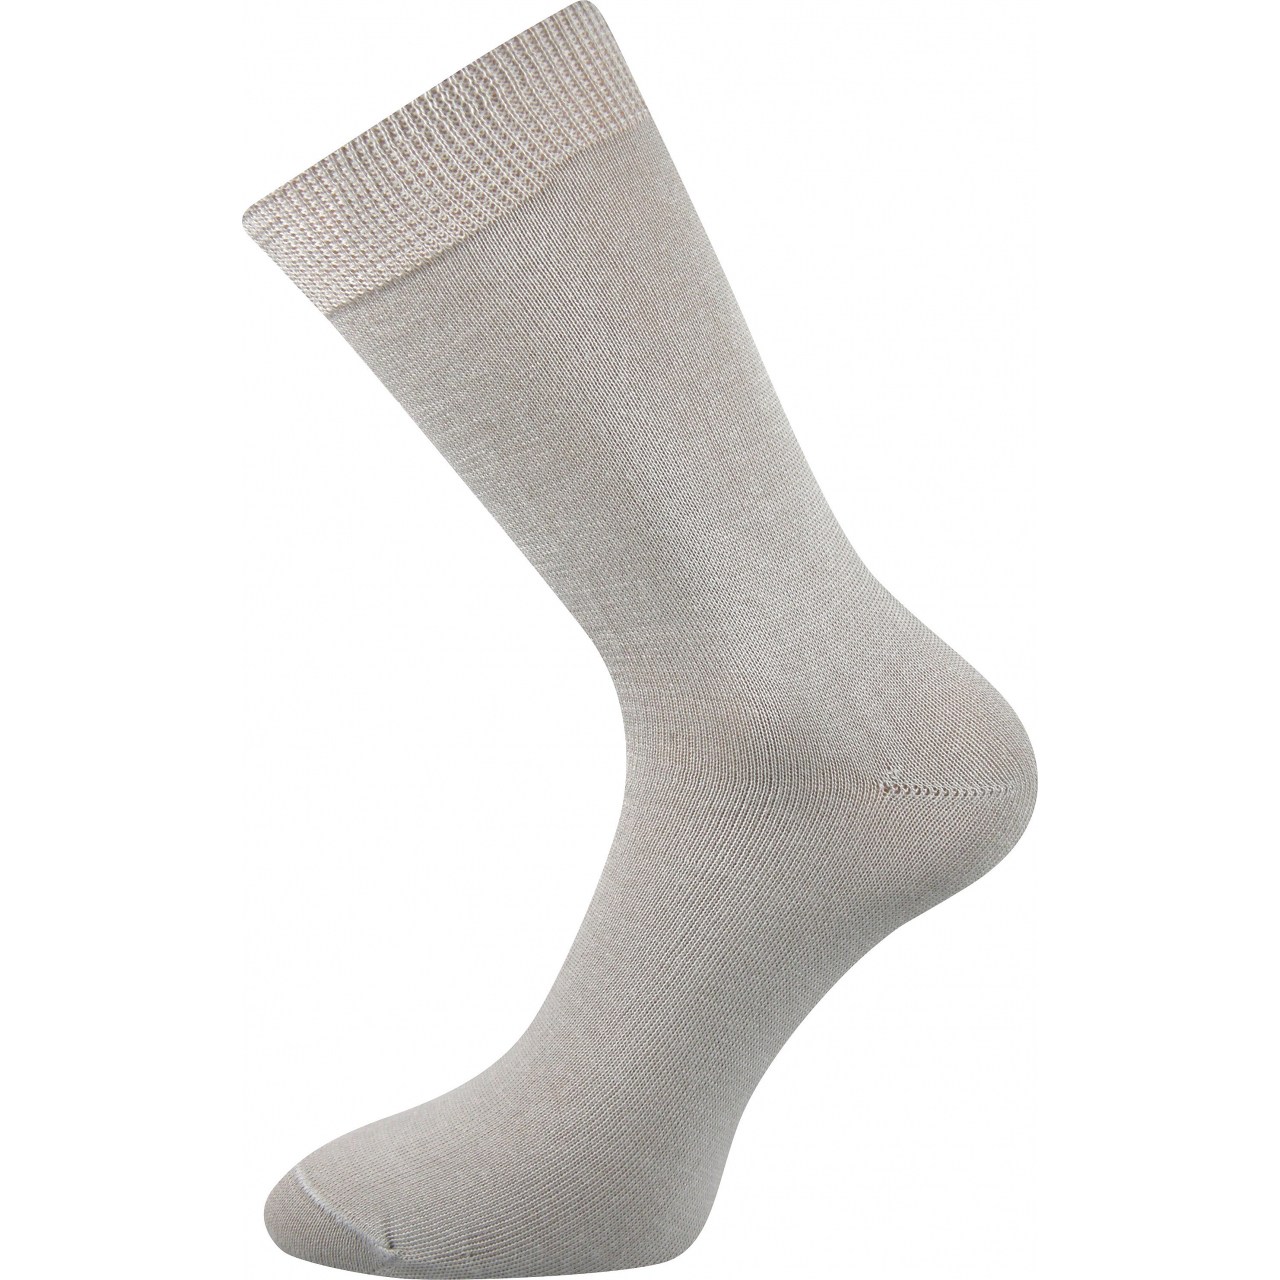 Ponožky dámské Lonka Fany - světle šedé, 38-39